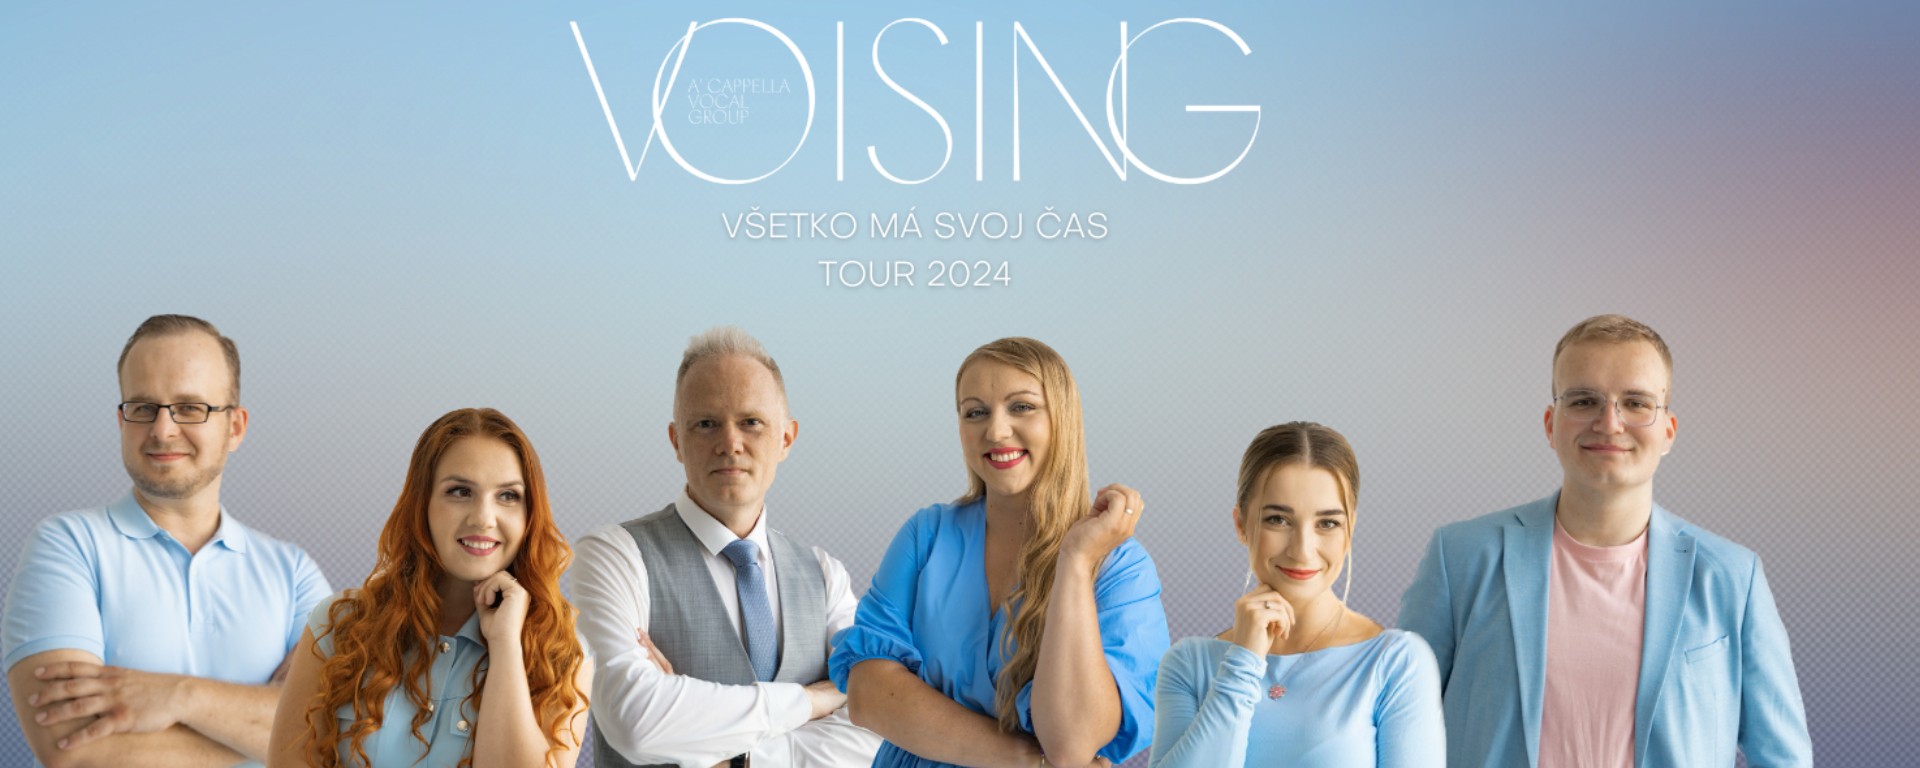 Voising: Čo koncert, to krst! Vokálna skupina Voising pokrstí nový album na piatich zastávkach slovenského turné!